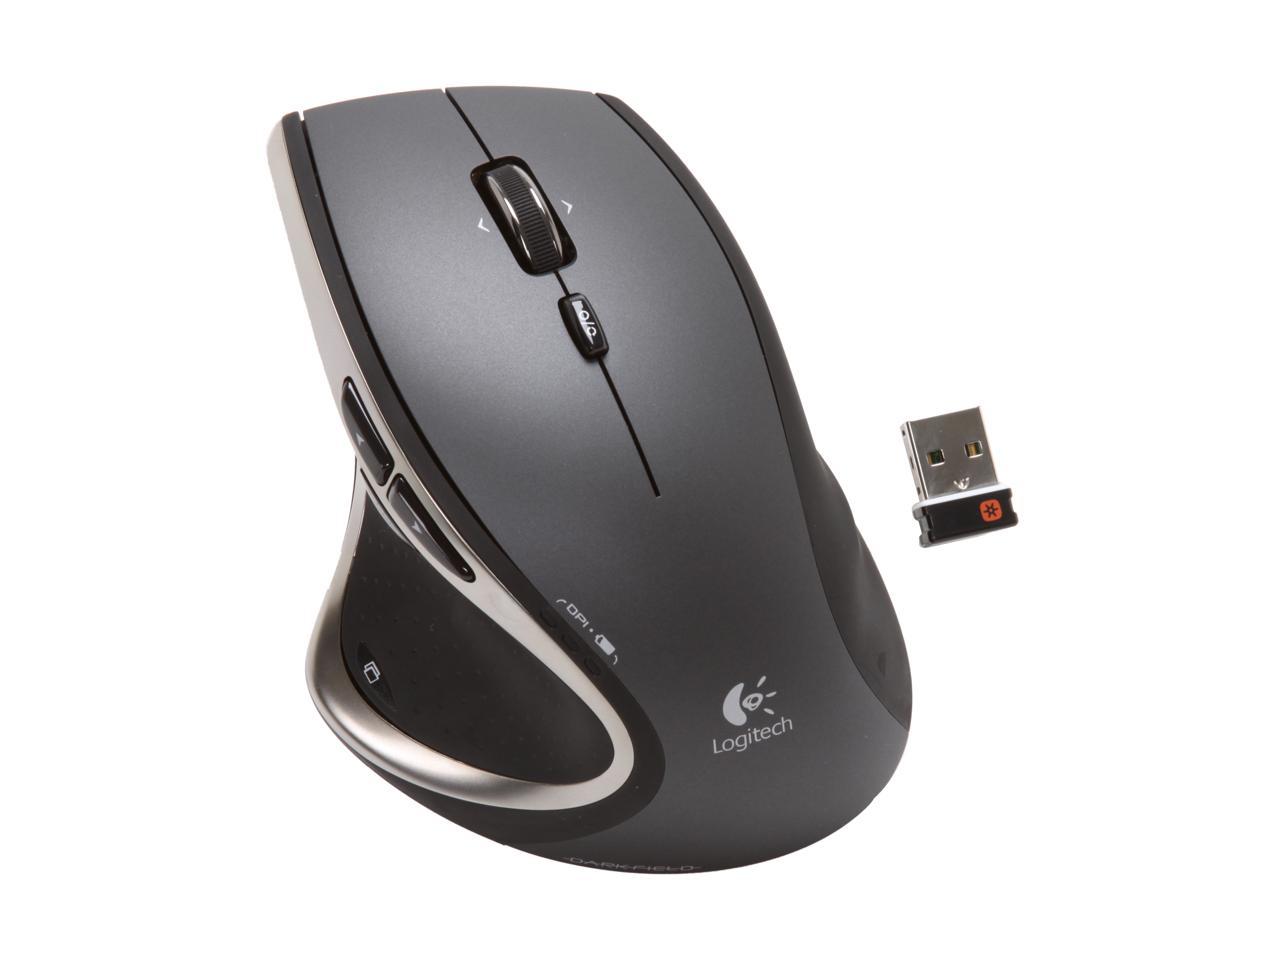 Beskæftiget Arbejdsgiver godtgørelse Logitech Performance Mouse MX - Newegg.com